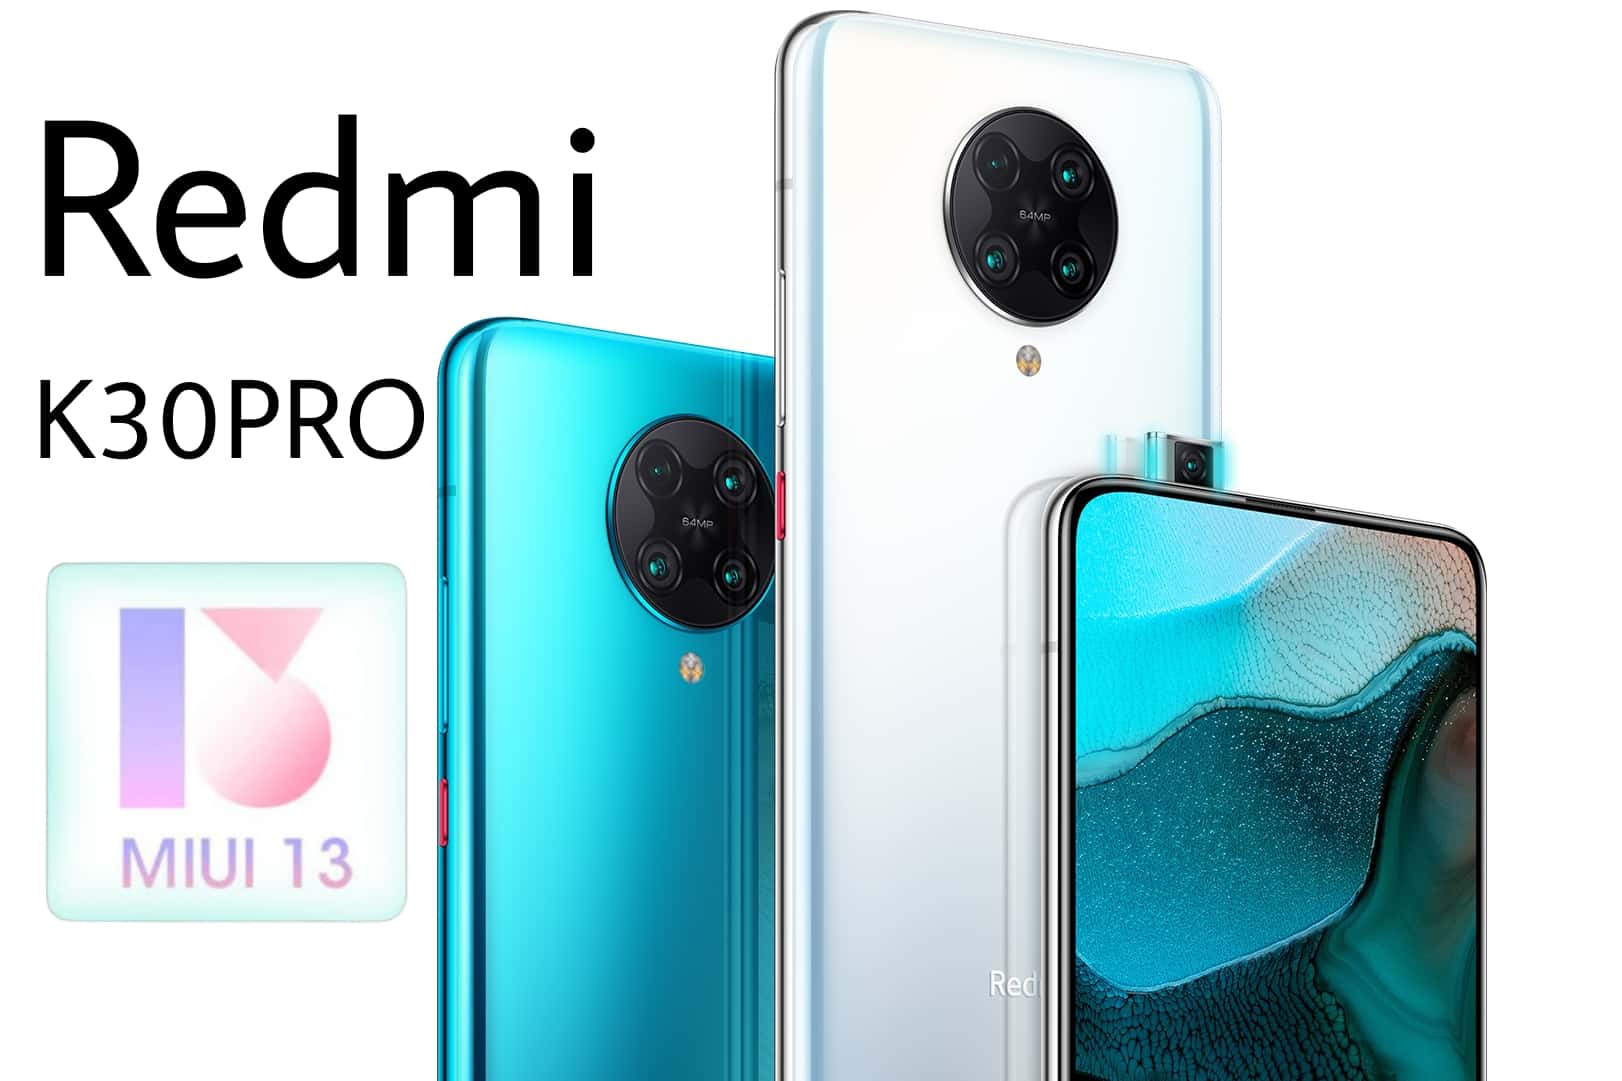 MIUI 13 Update for Redmi K30 Pro